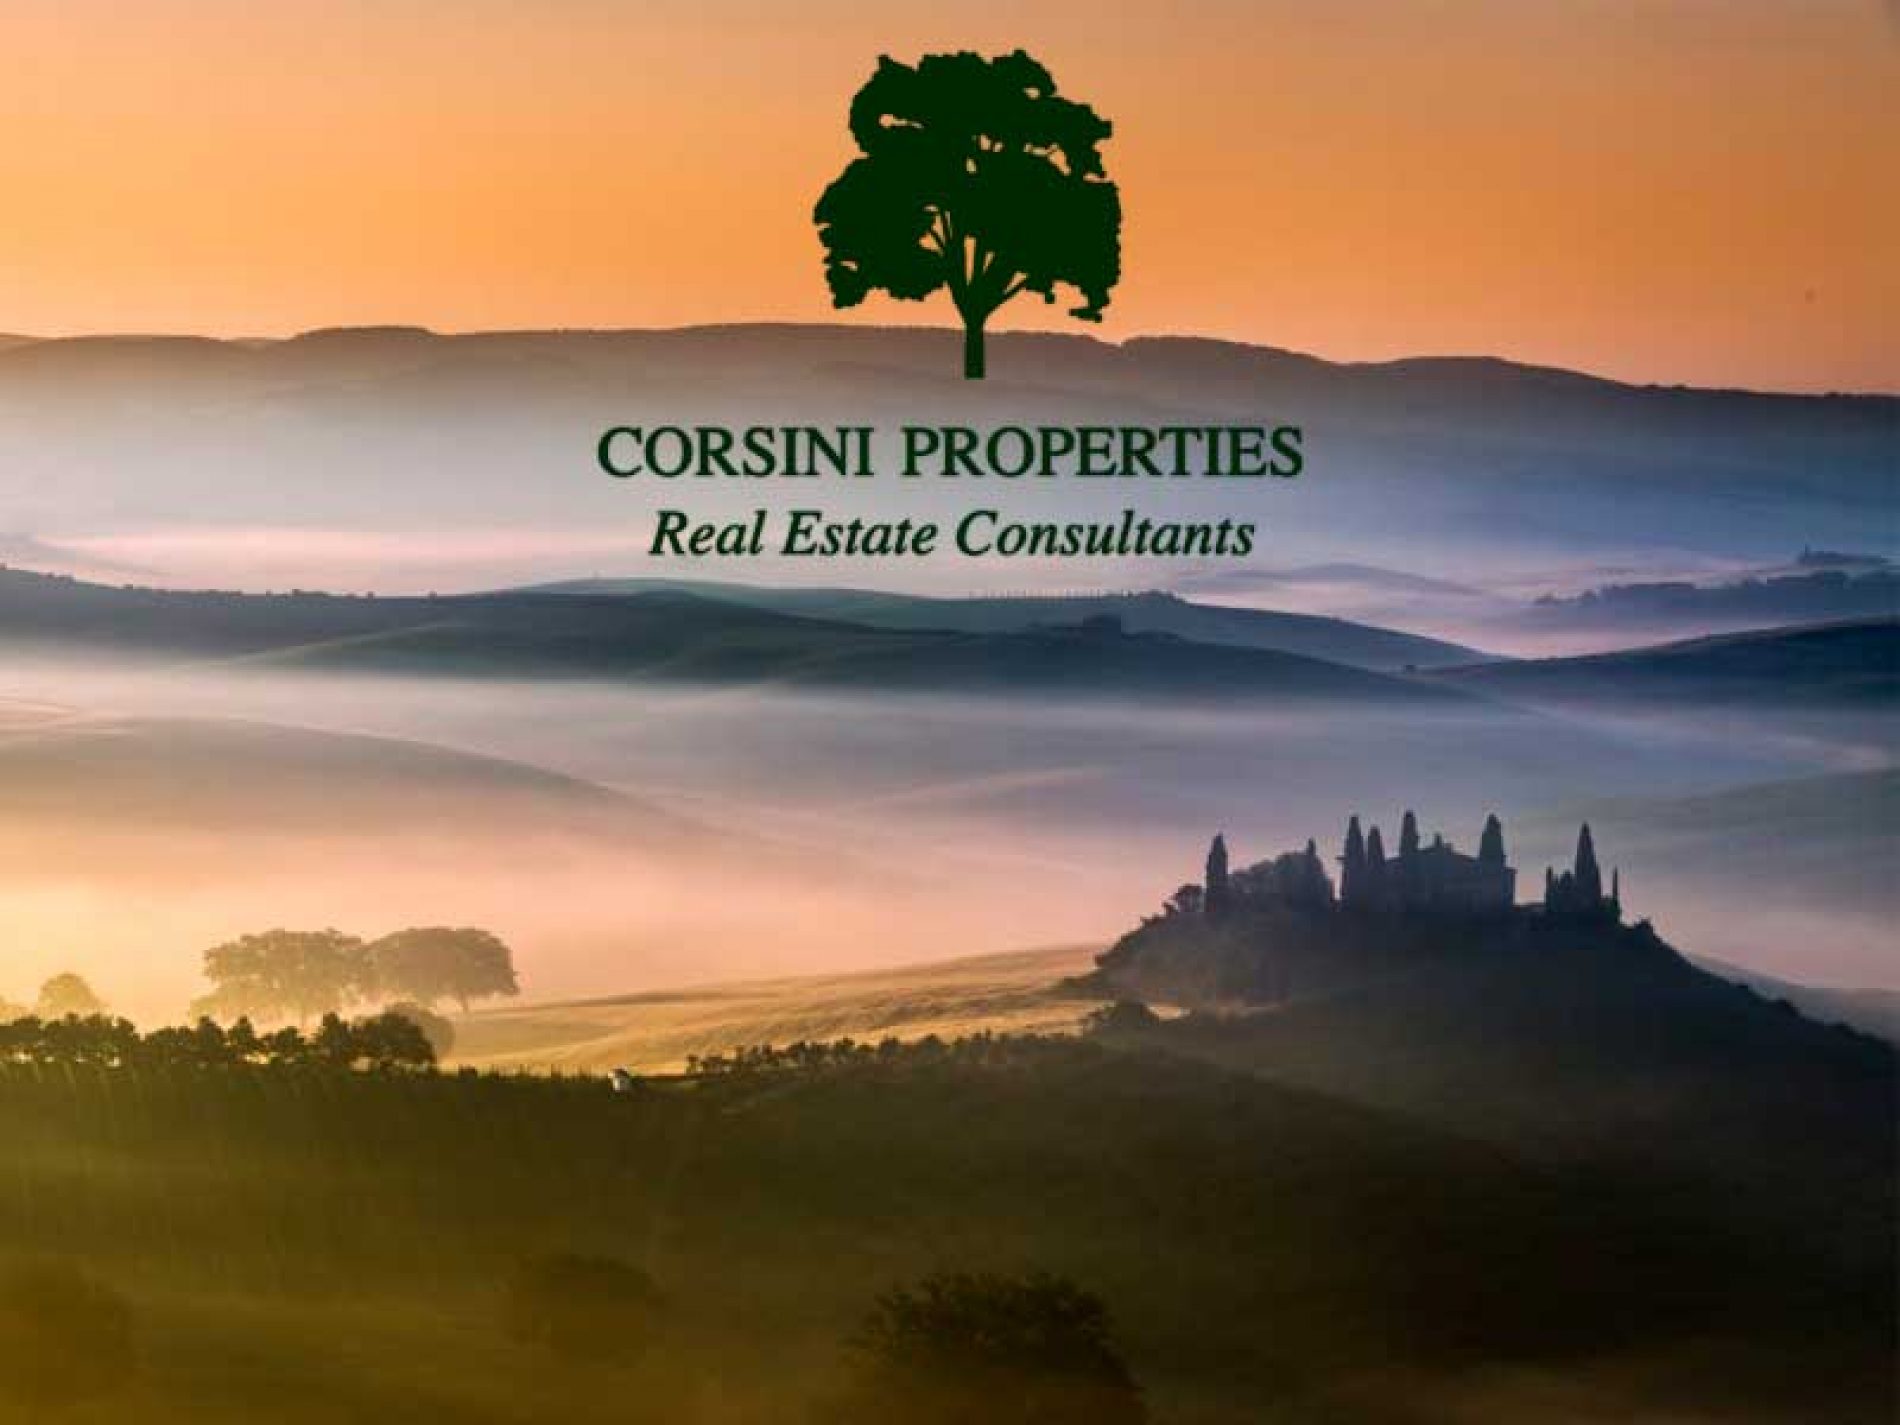 Corsini Properties amplía sus servicios asesorando en la compraventa de fincas rústicas